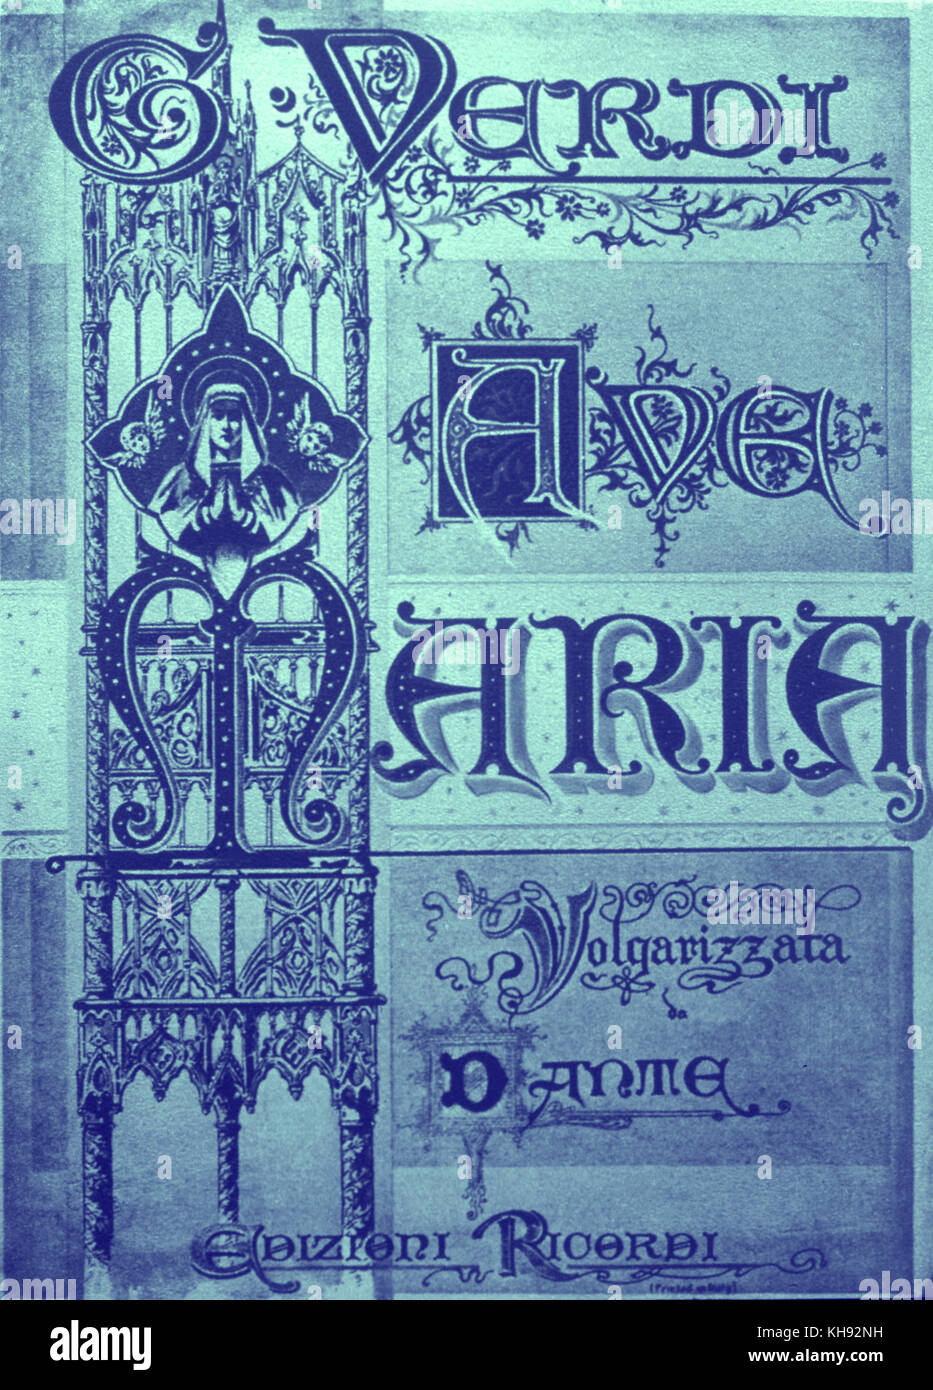 VERDI - AVE MARIA - TITLEPAGE DI AVE MARIA Ricordi Edition, tradotto da Dante. Compositore italiano (1813-1901) Foto Stock